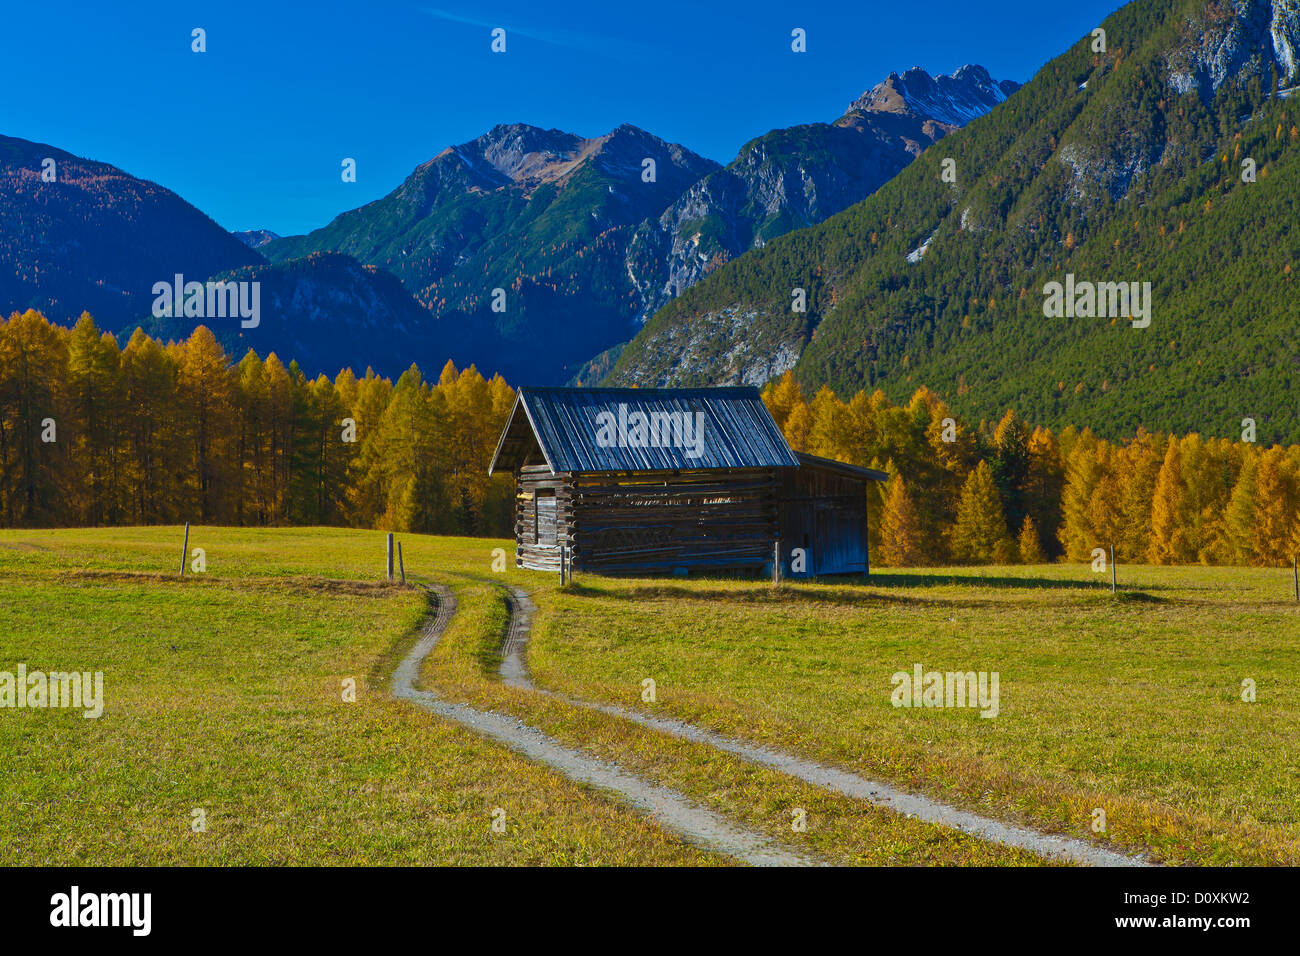 Austria, Europe, Tyrol, Tirol, Mieming, chain, plateau, Obsteig, Holzleiten, Holzleitensattel, meadow, Stadel, way, country lane Stock Photo